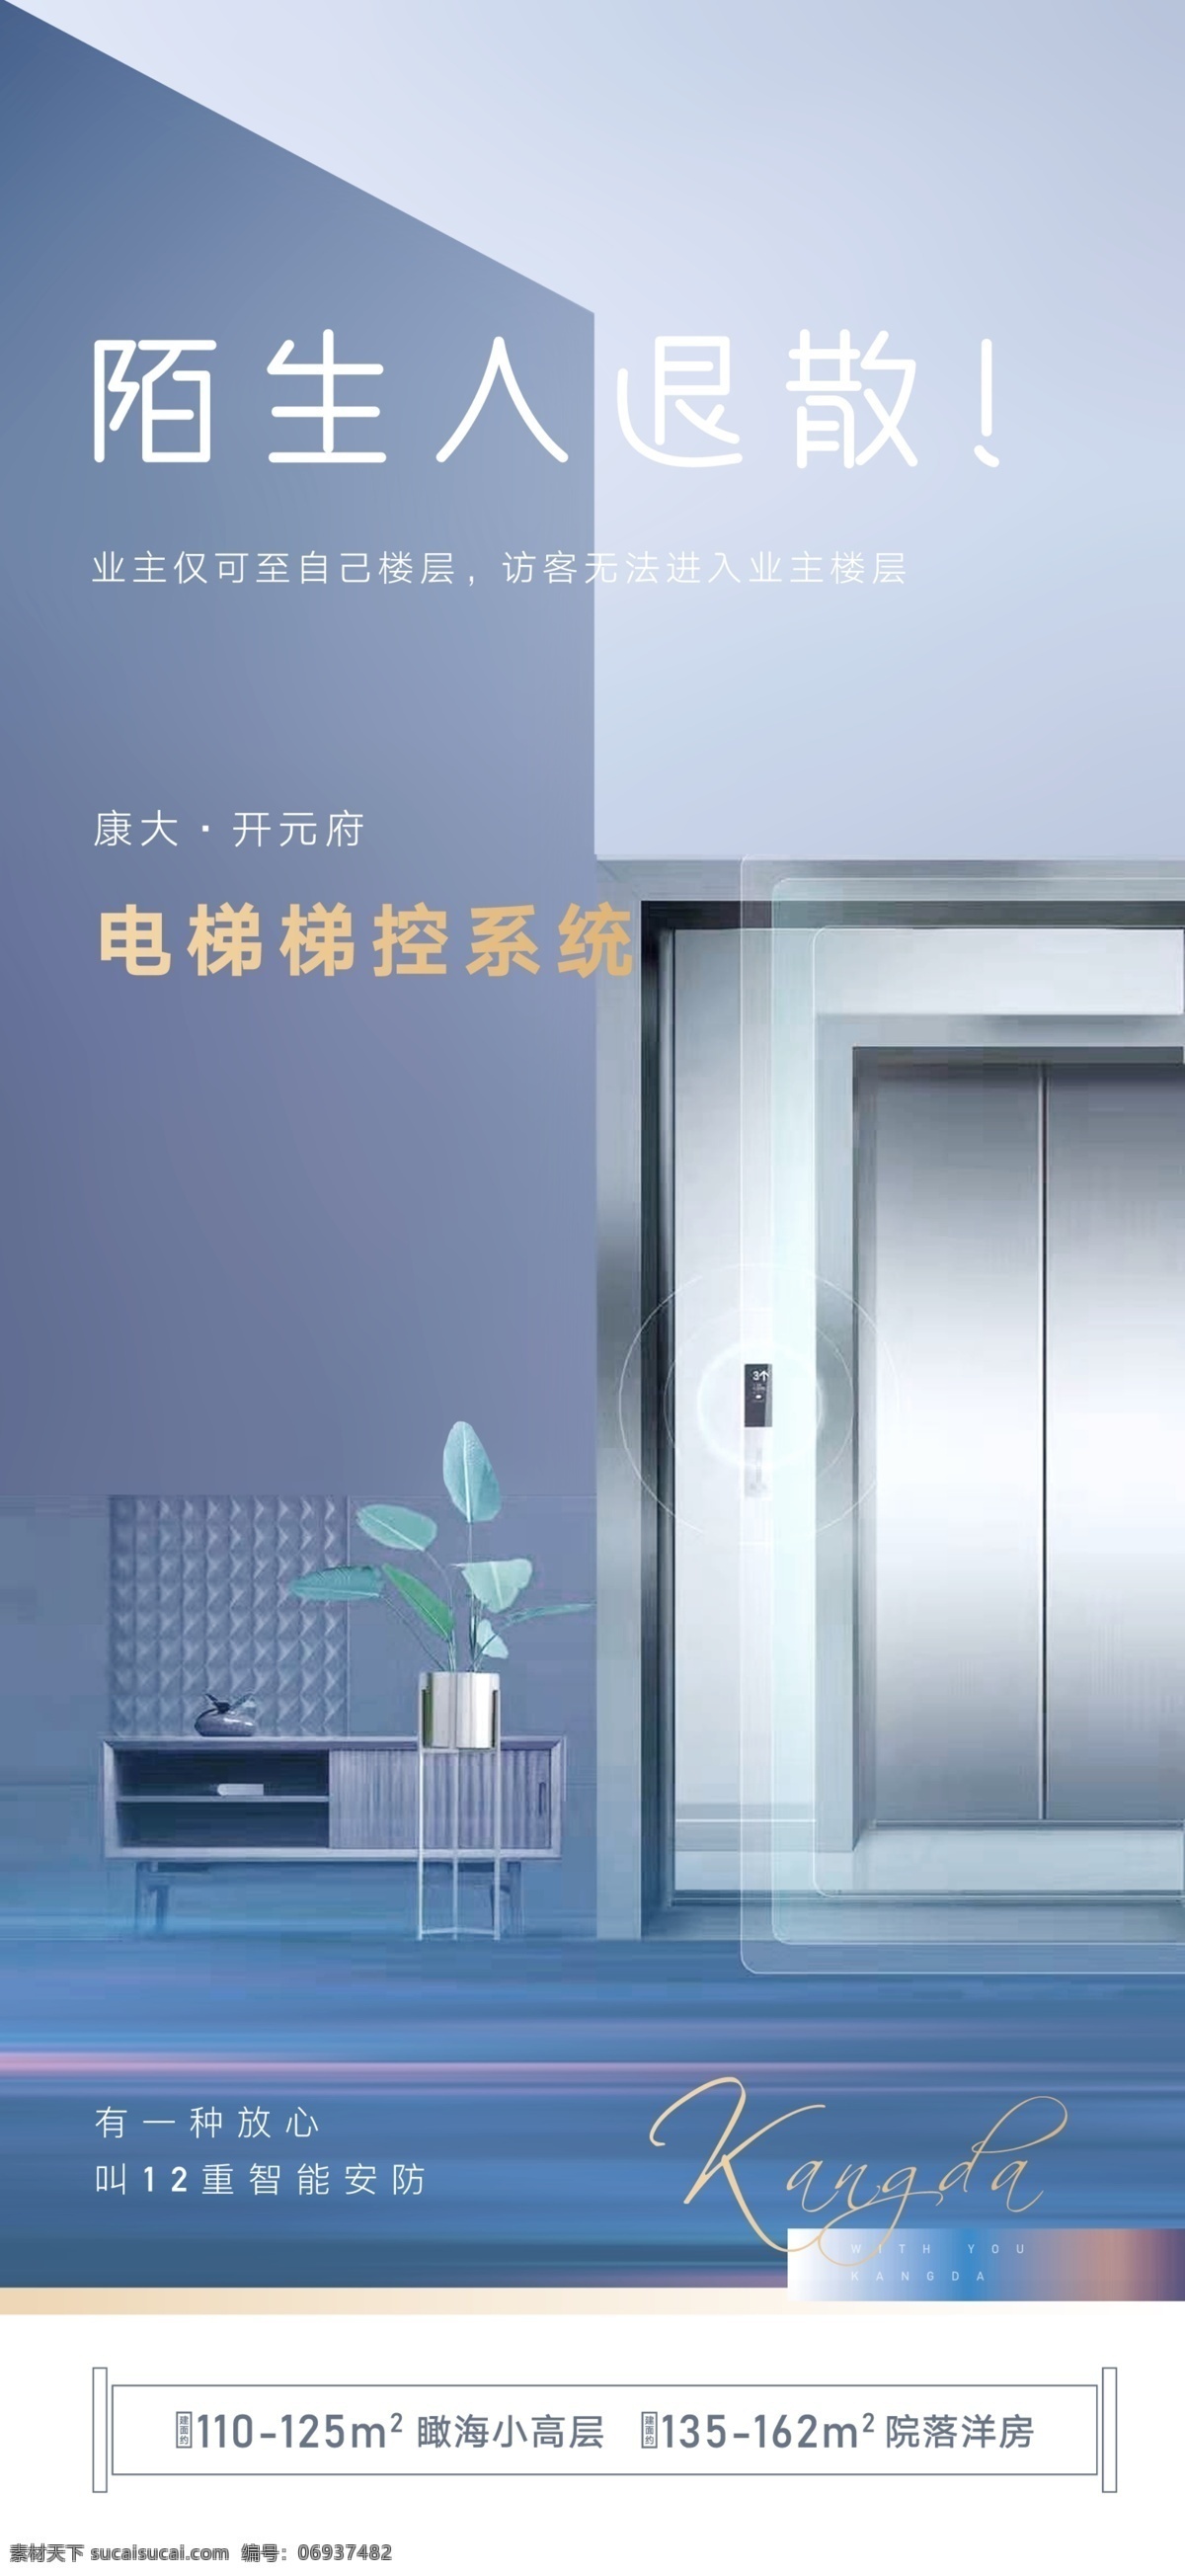 电梯 梯 控 系统 梯控系统 智能 科技 地产 现代科技